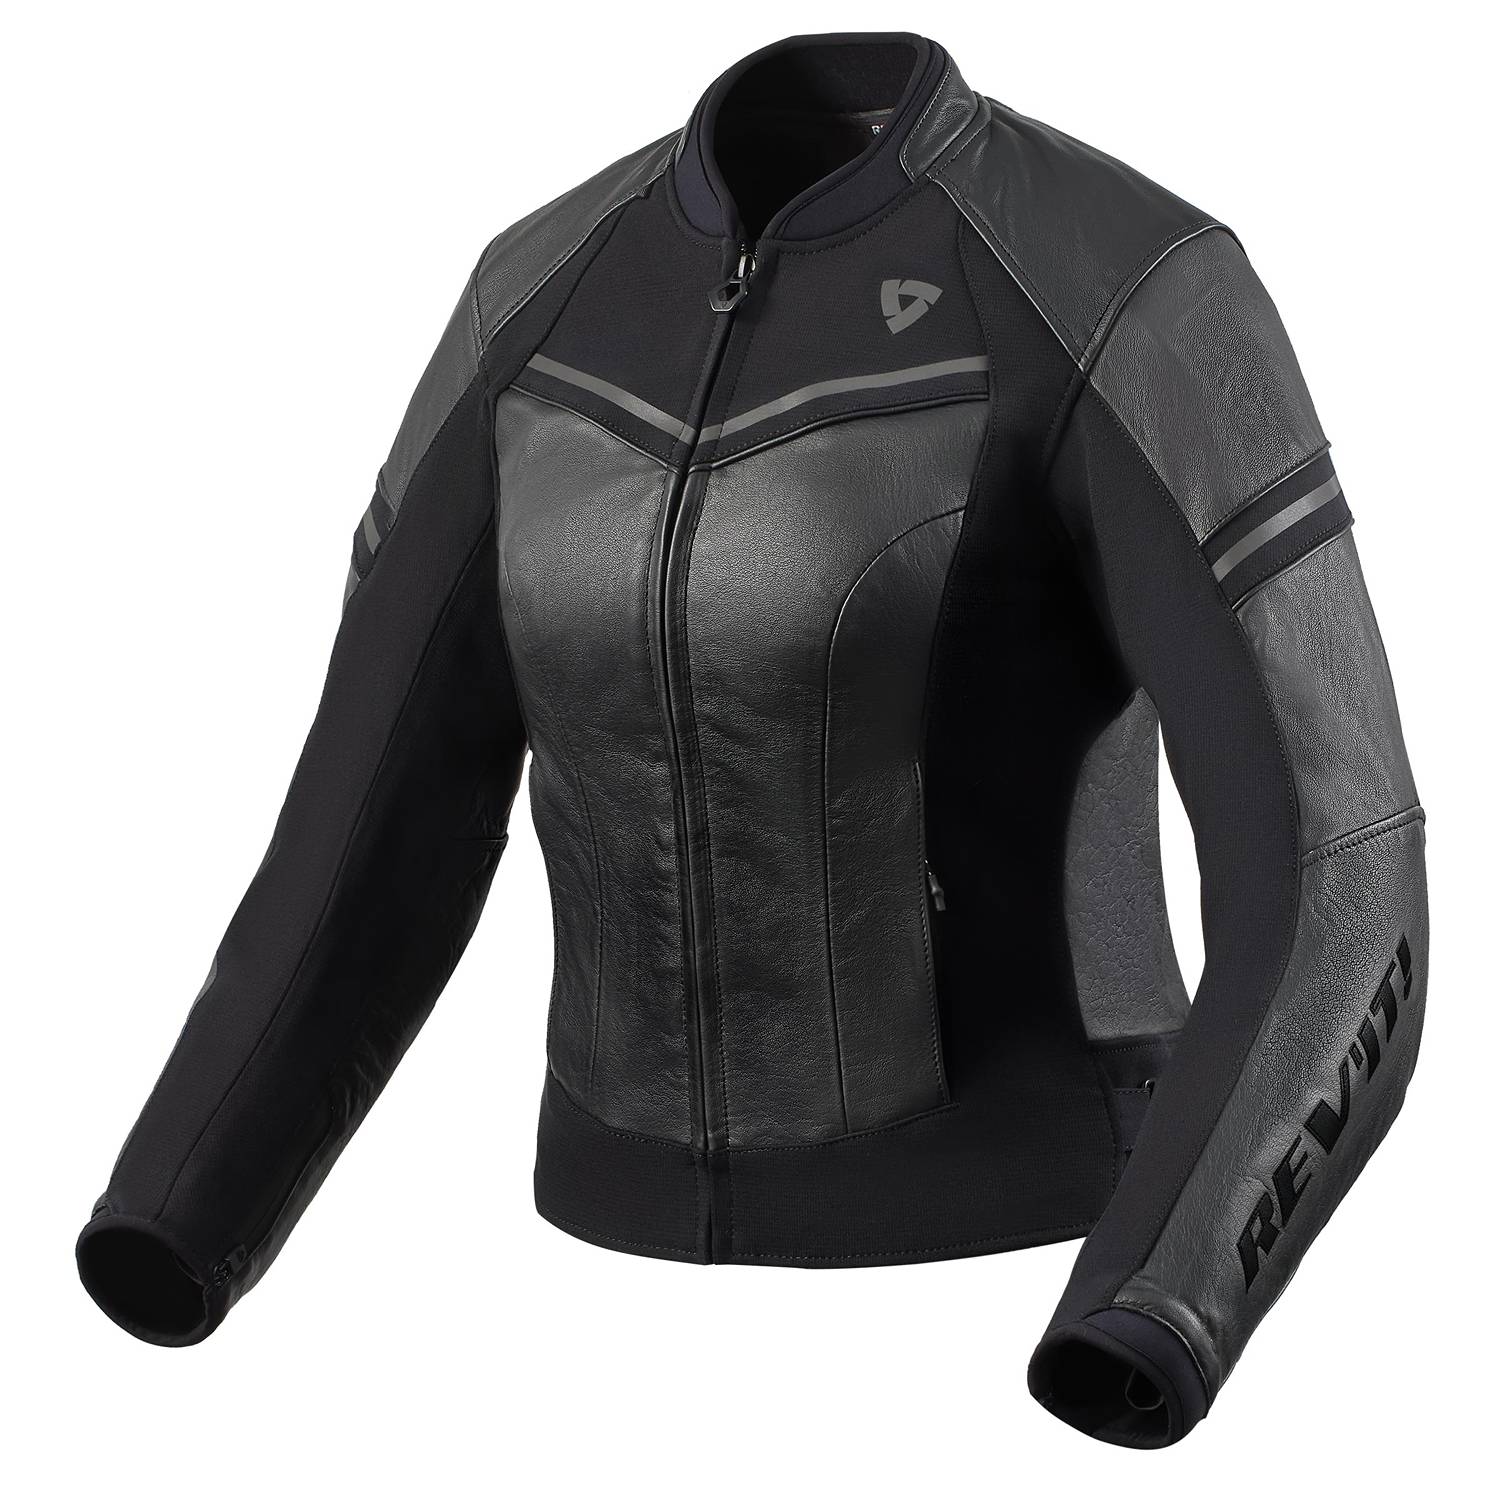 Image of REV'IT! Median Ladies Jacket Black Anthracite Size 38 EN